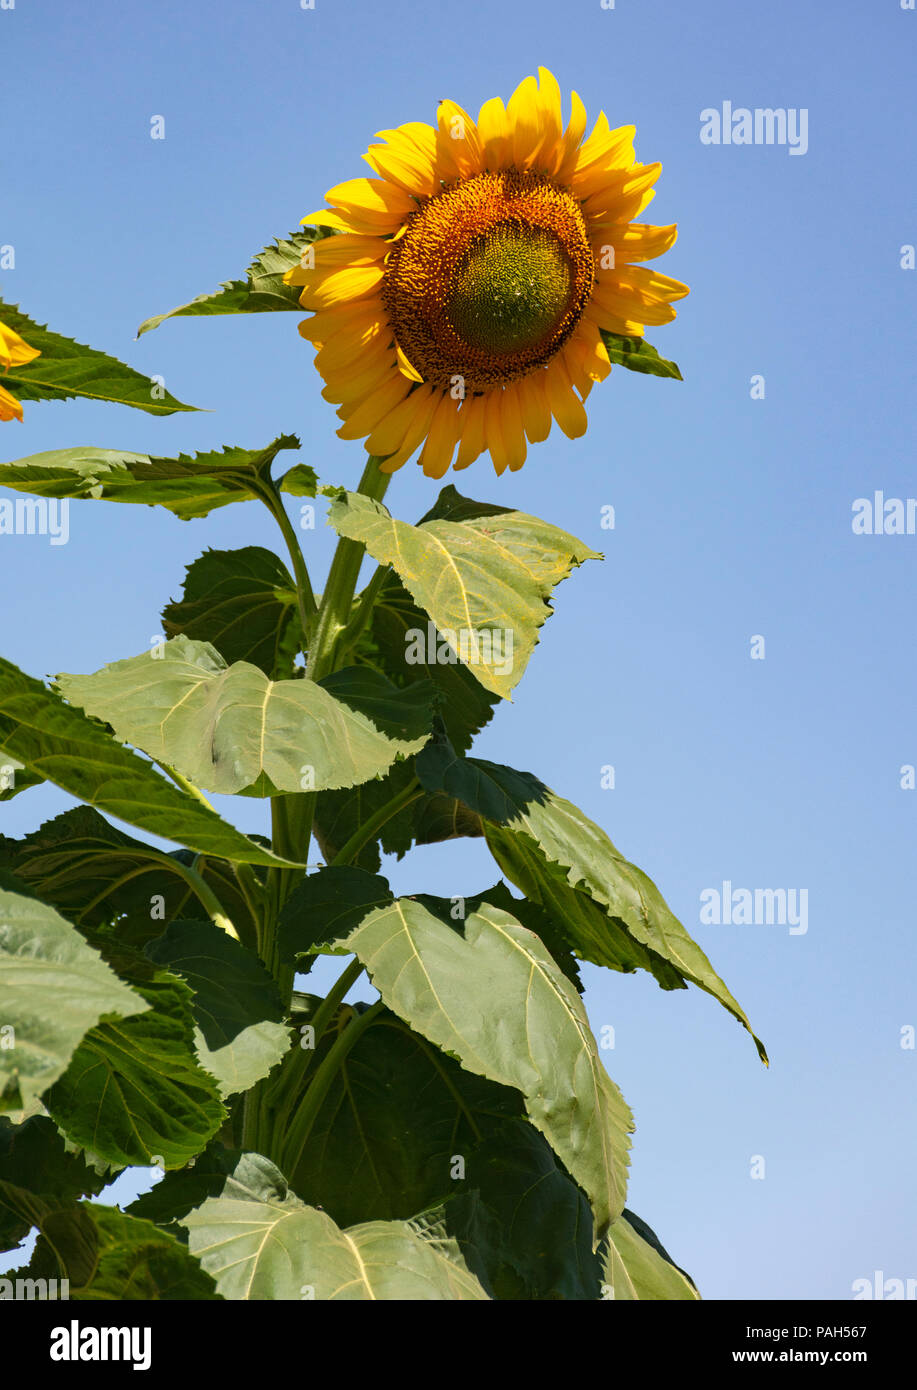 Un tournesol géant dominant de la photographe avec un fond de ciel bleu clair Banque D'Images